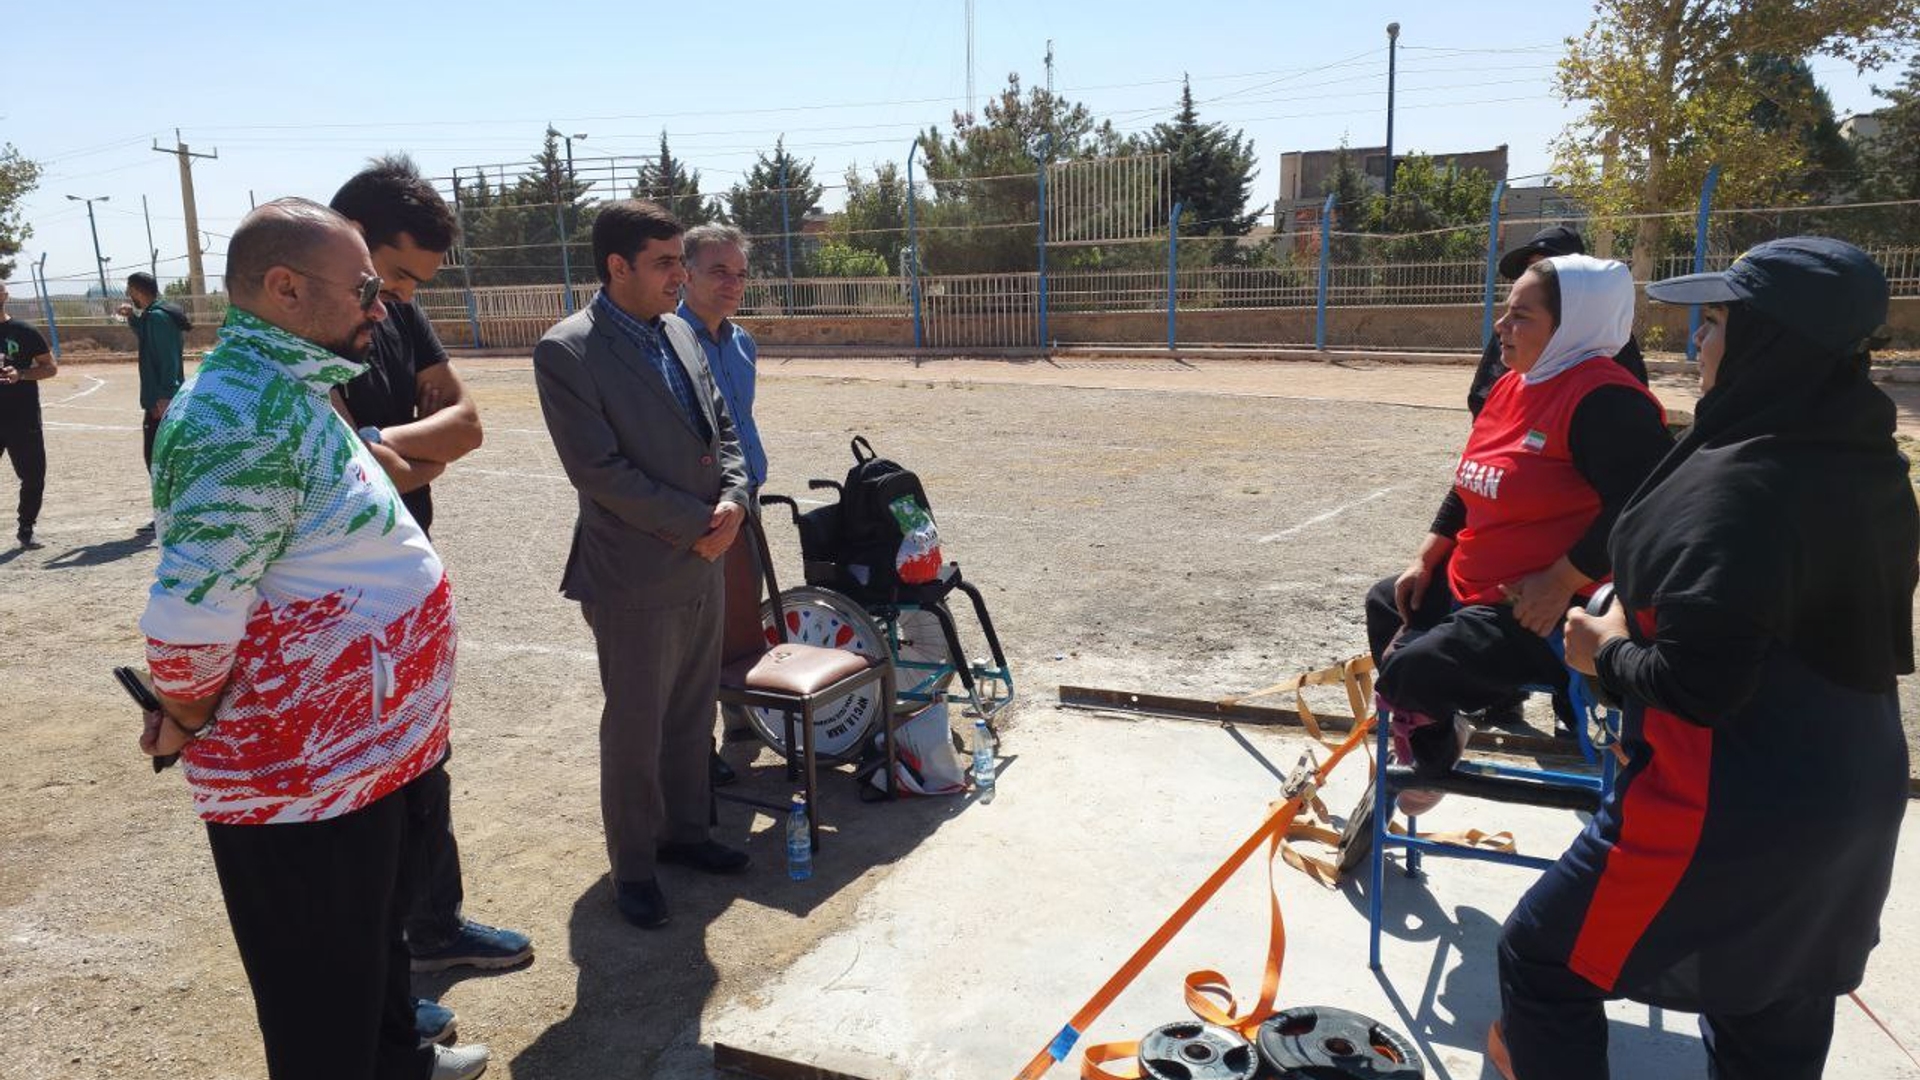 اردوی تیم ملی جانبازان و معلولین در رشته پارا دومیدانی در شهرستان محلات شروع شد.